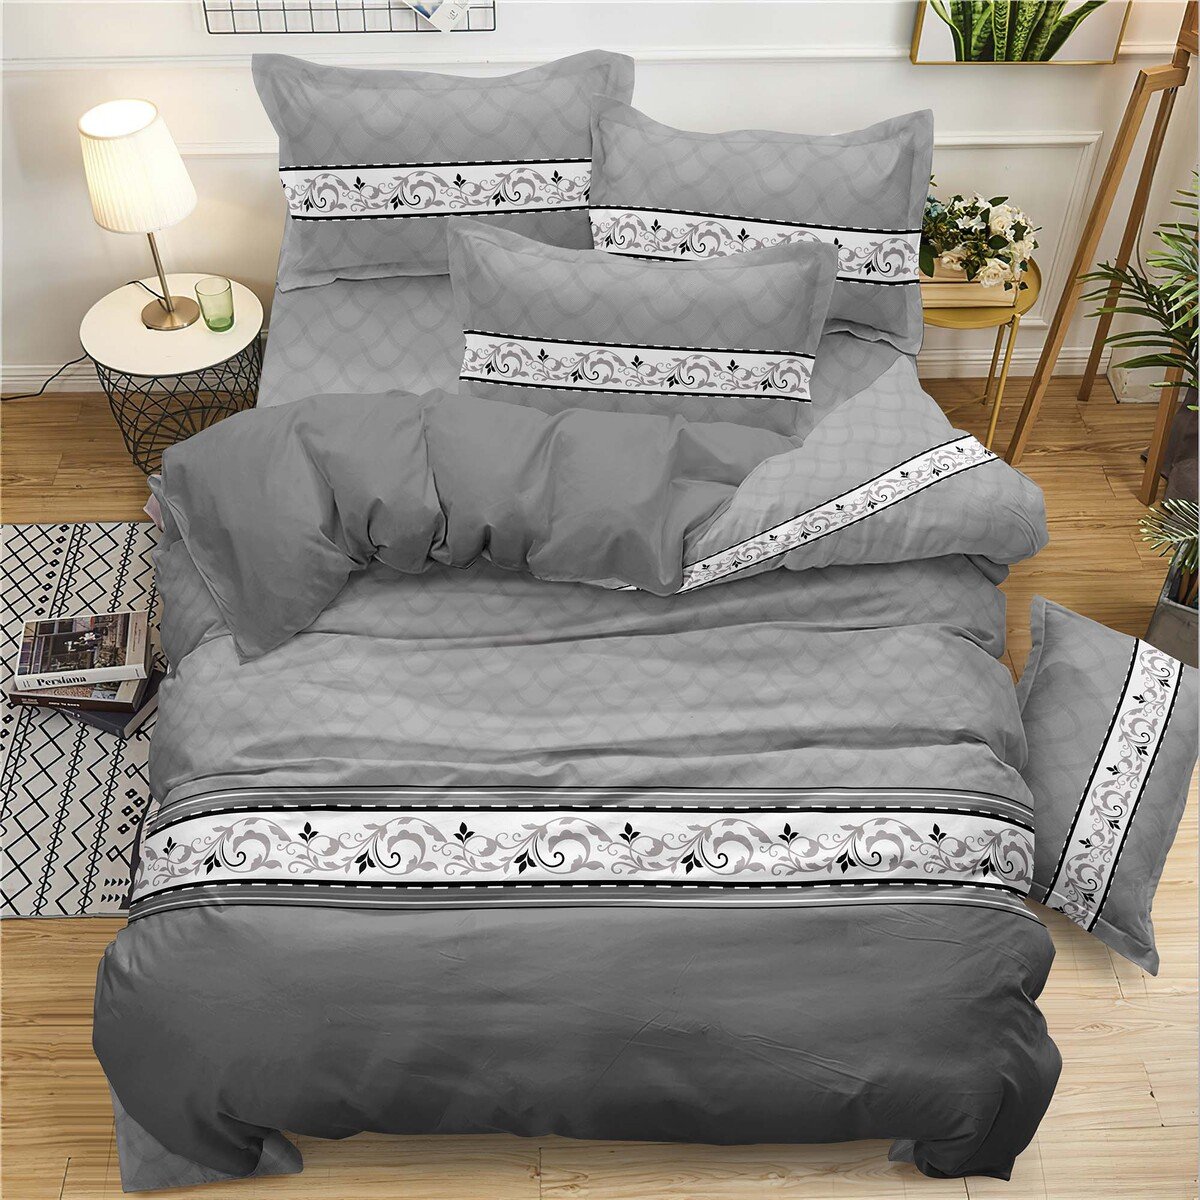 Crystal Valentine Comforter 6pcs Set Assorted